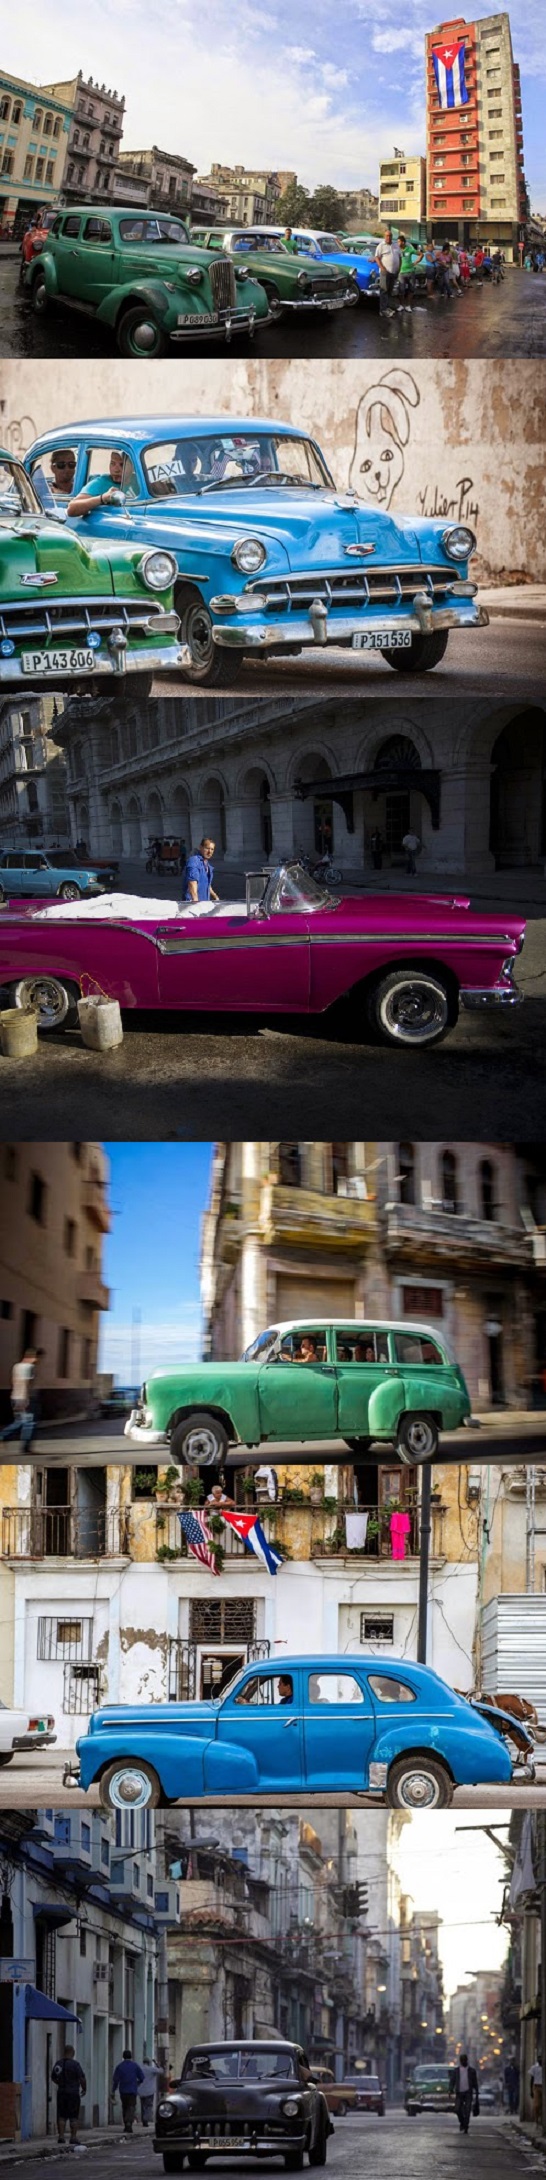  صور مدهشة لسيارات كلاسيكية تجدها فقط في كوبا!       Auto.Car.2